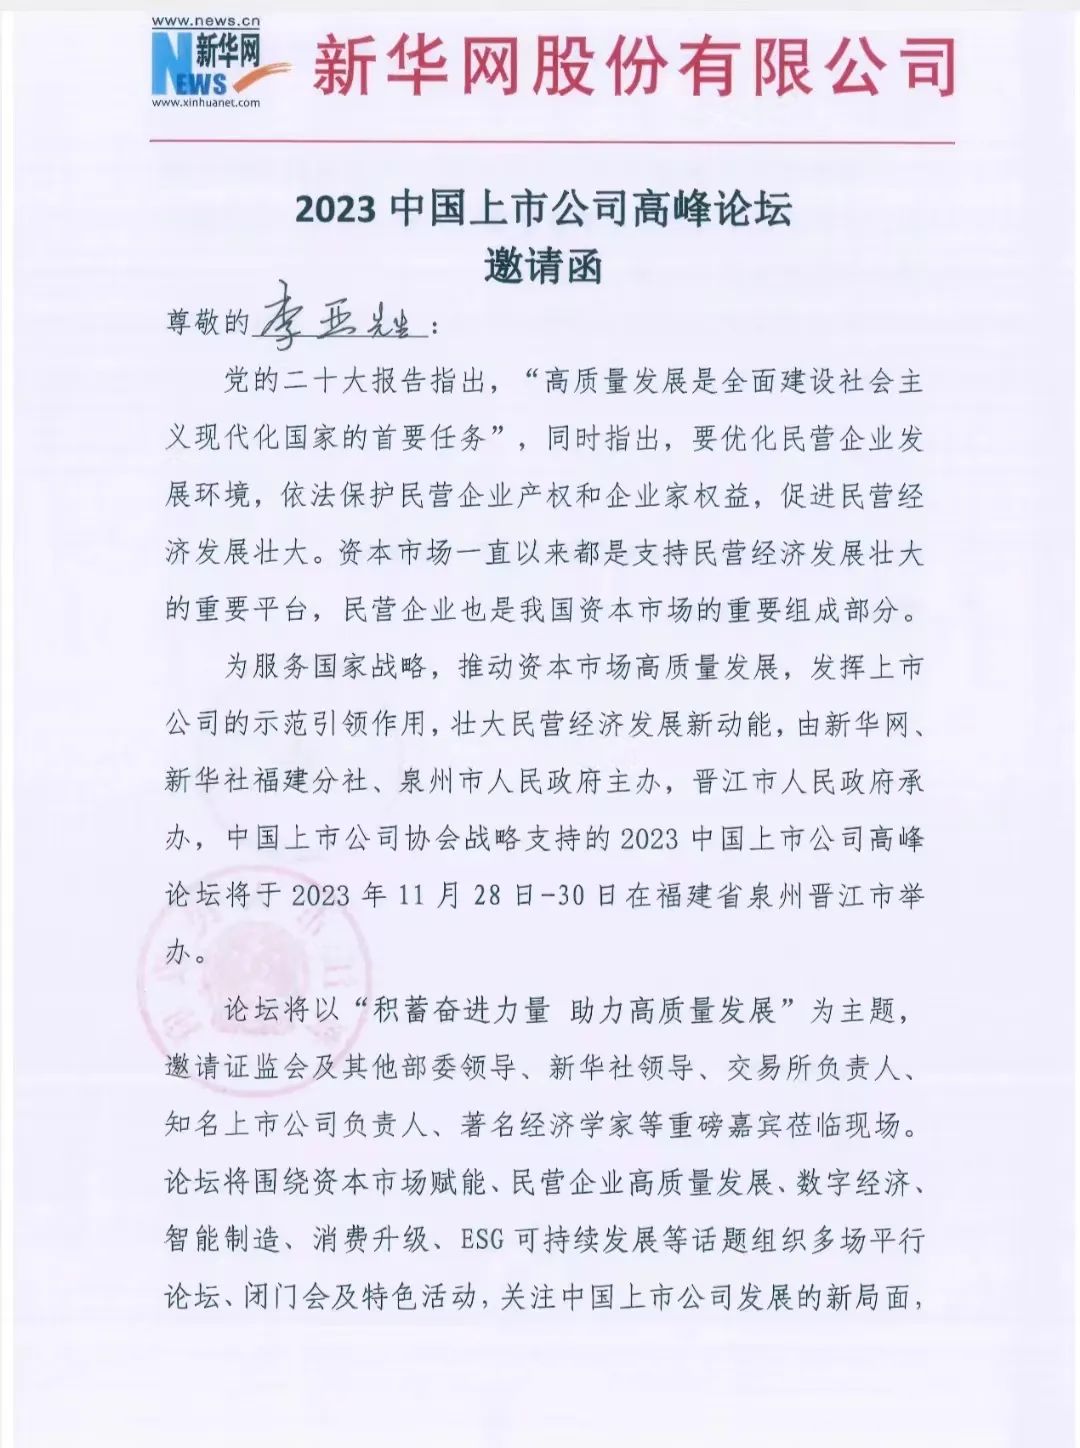 【简讯】理臣中国董事长受邀出席2023中国上市公司高峰论坛